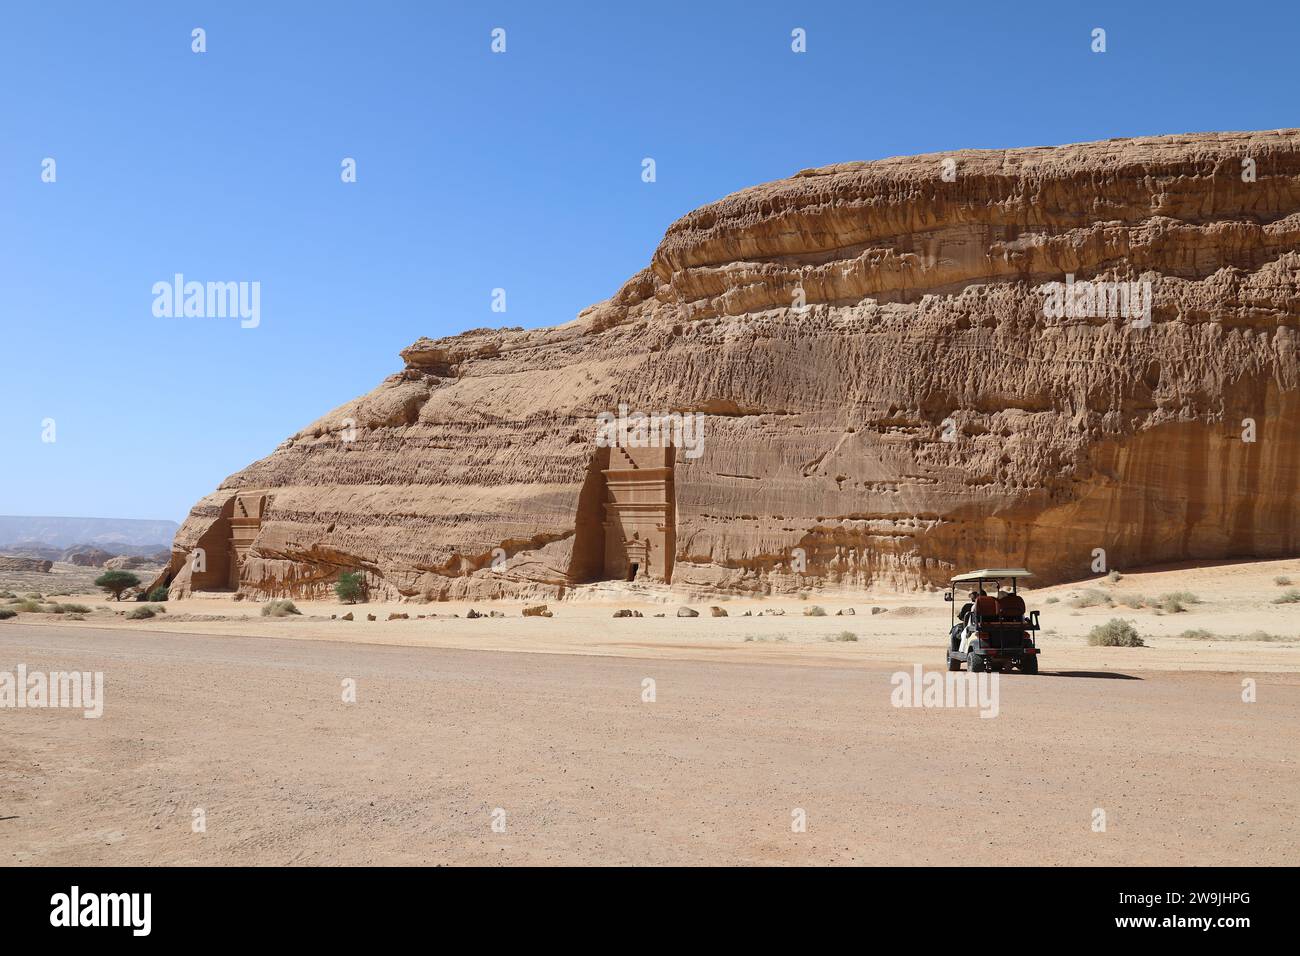 Buggy turistico ad al Banat in un tour di Hegra nel deserto Arabico Foto Stock